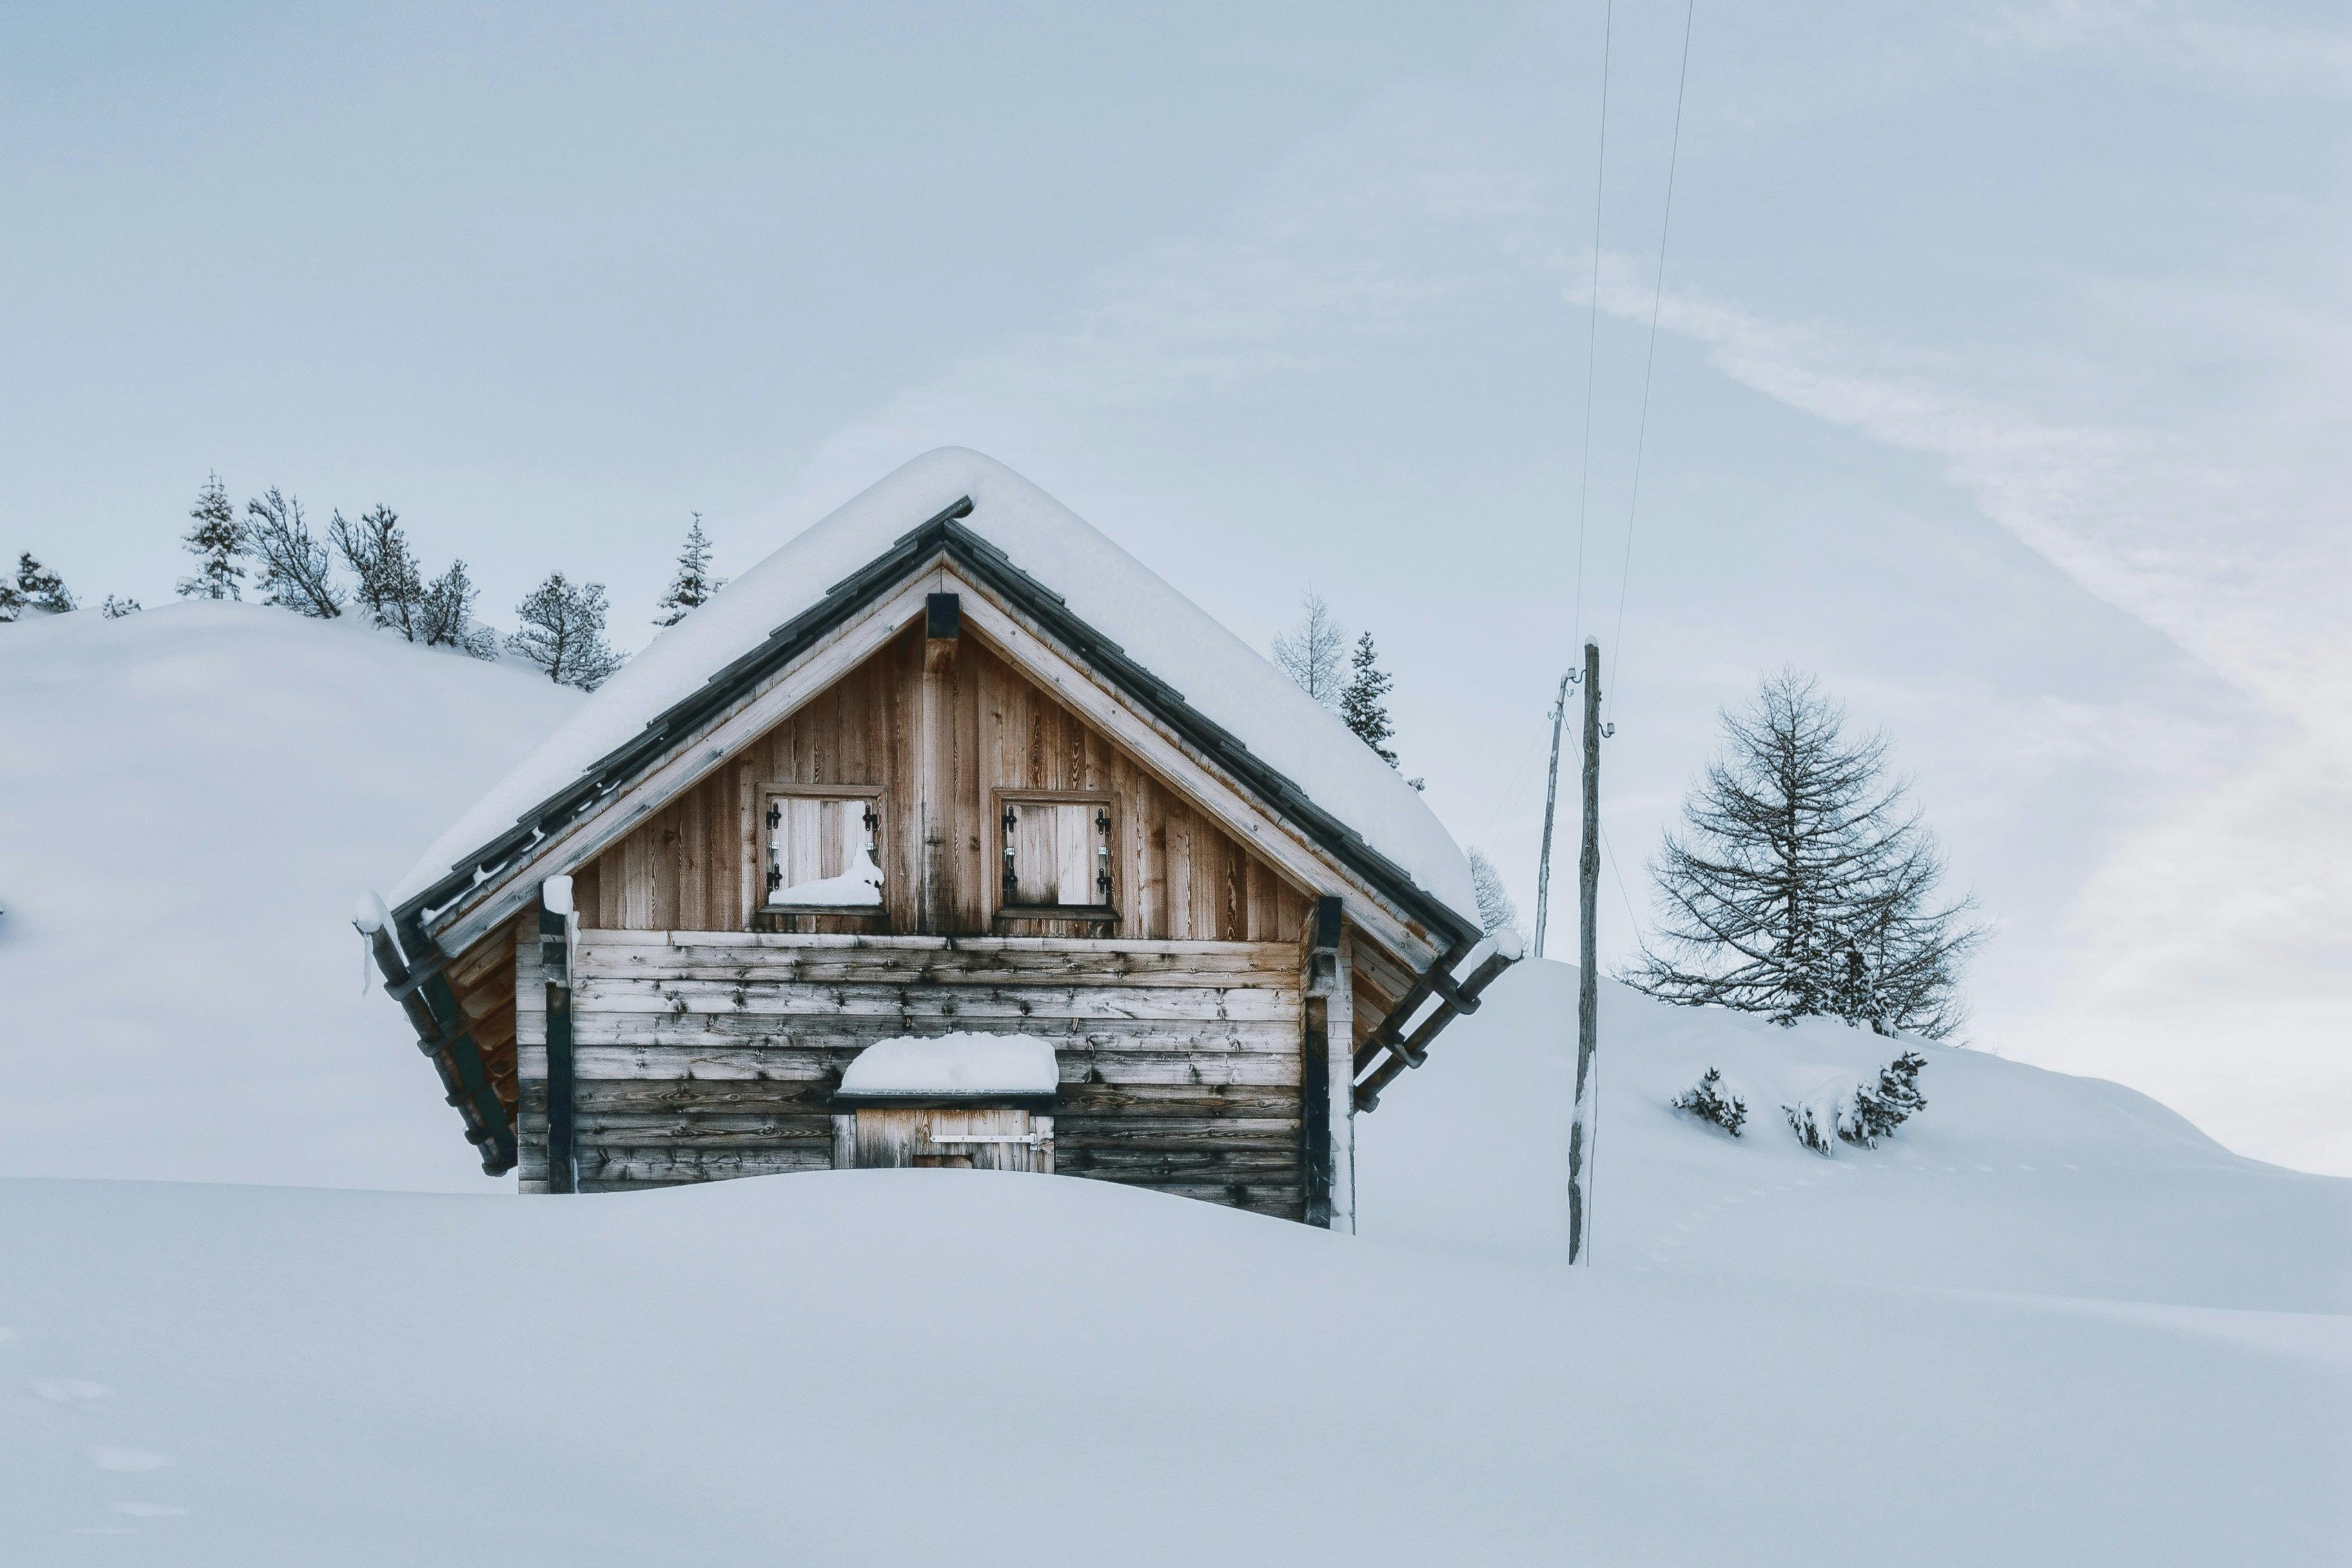 Isolated snowy mountain hut